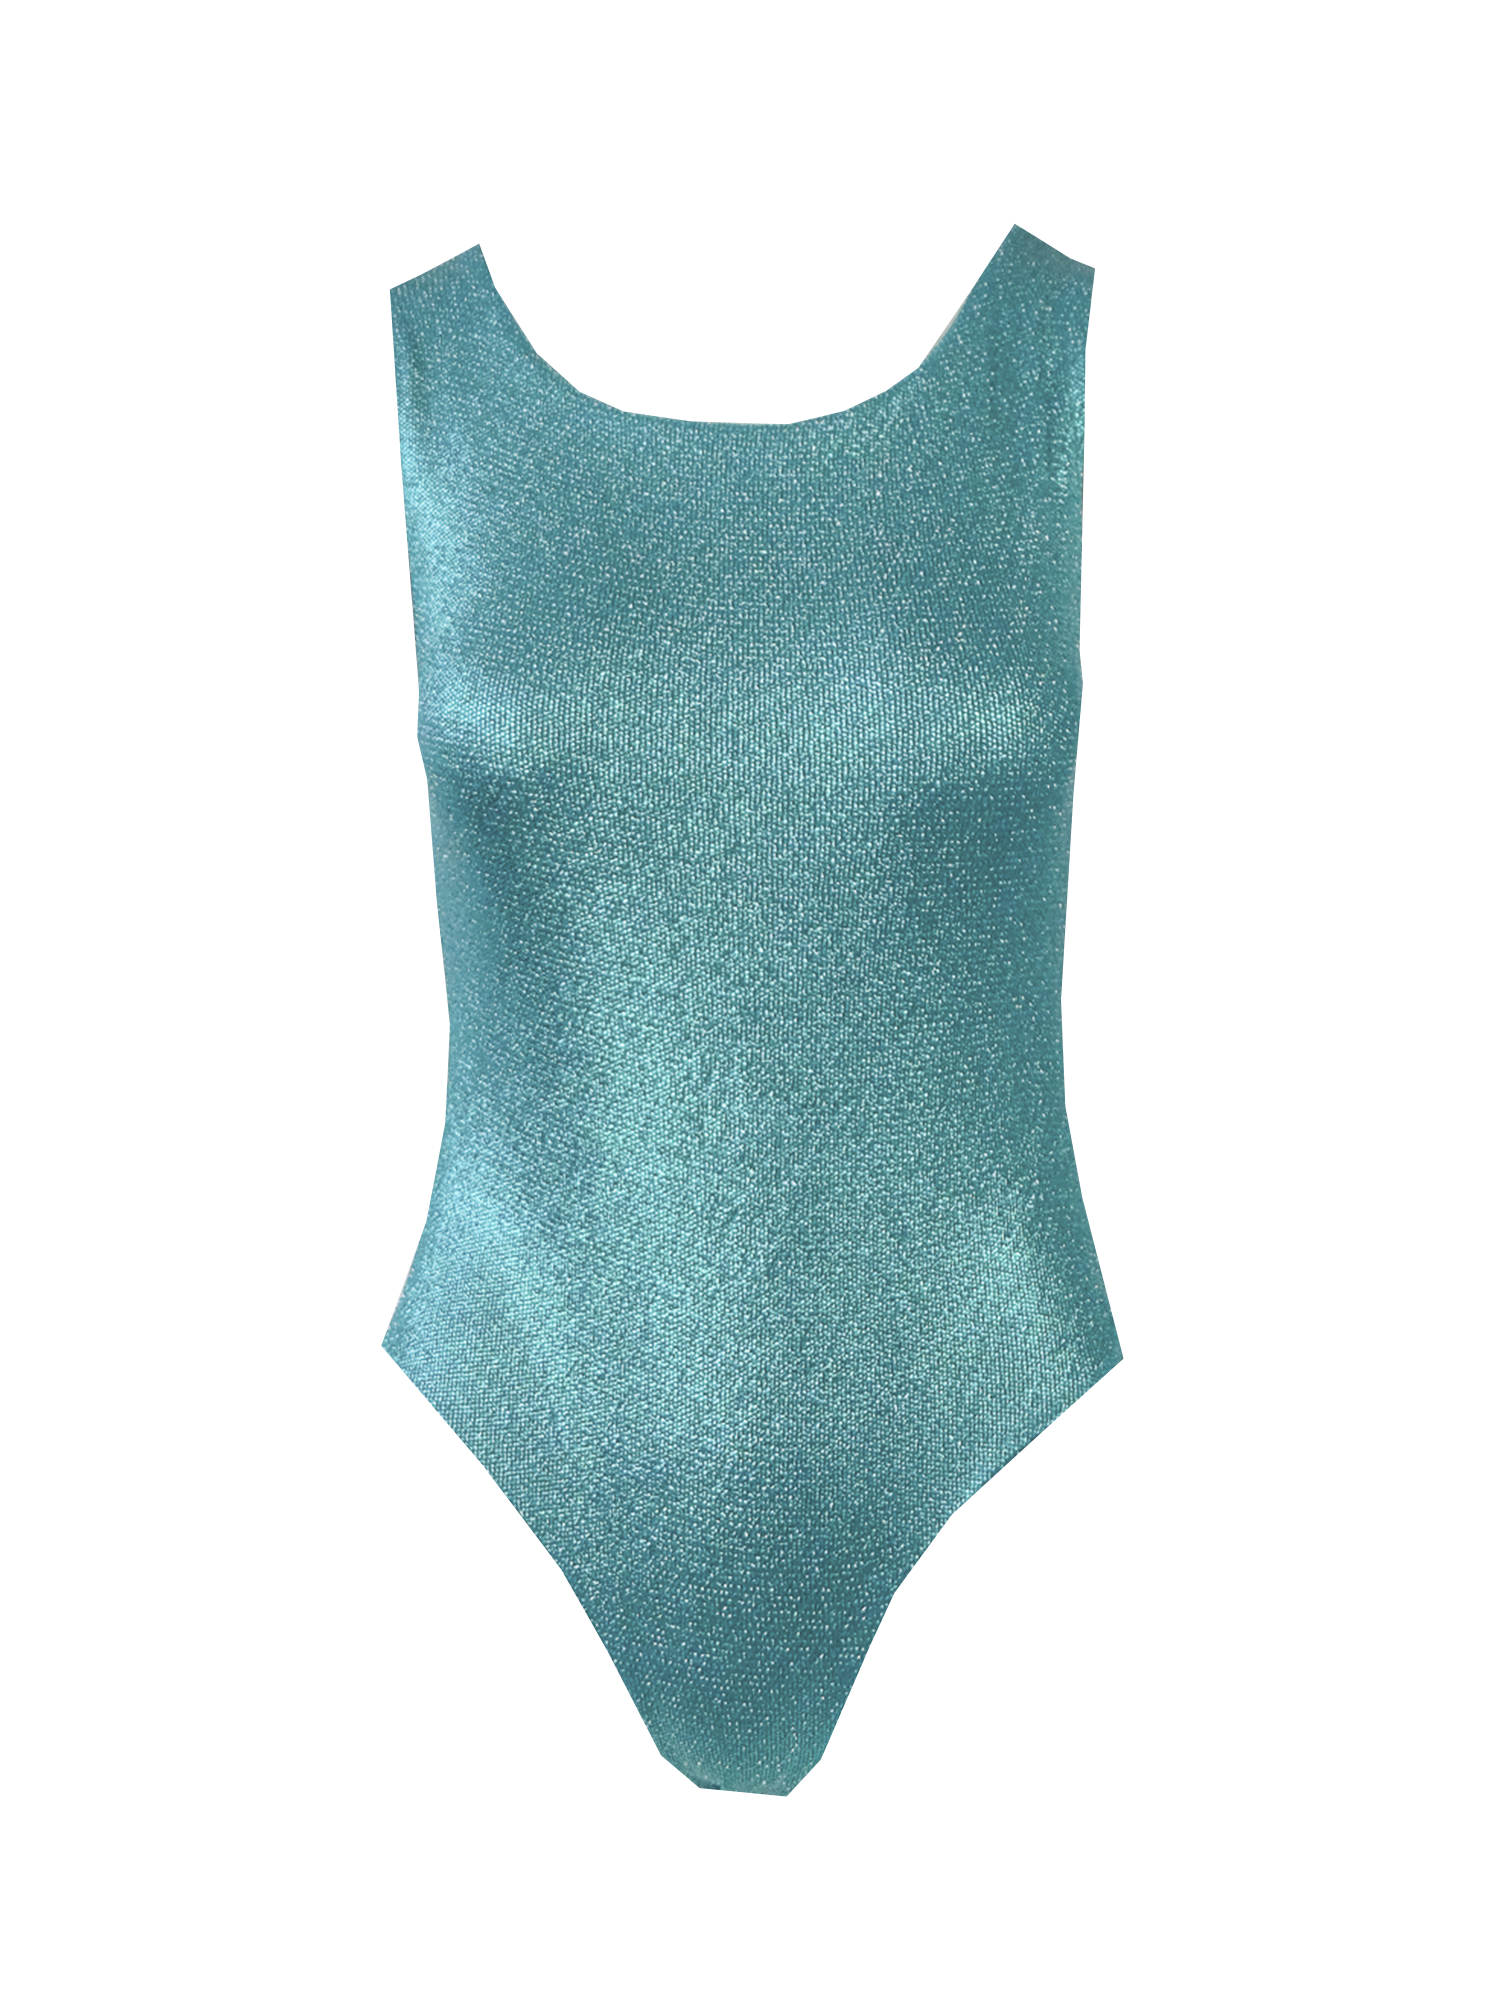 ILENIA - green lurex bodysuit